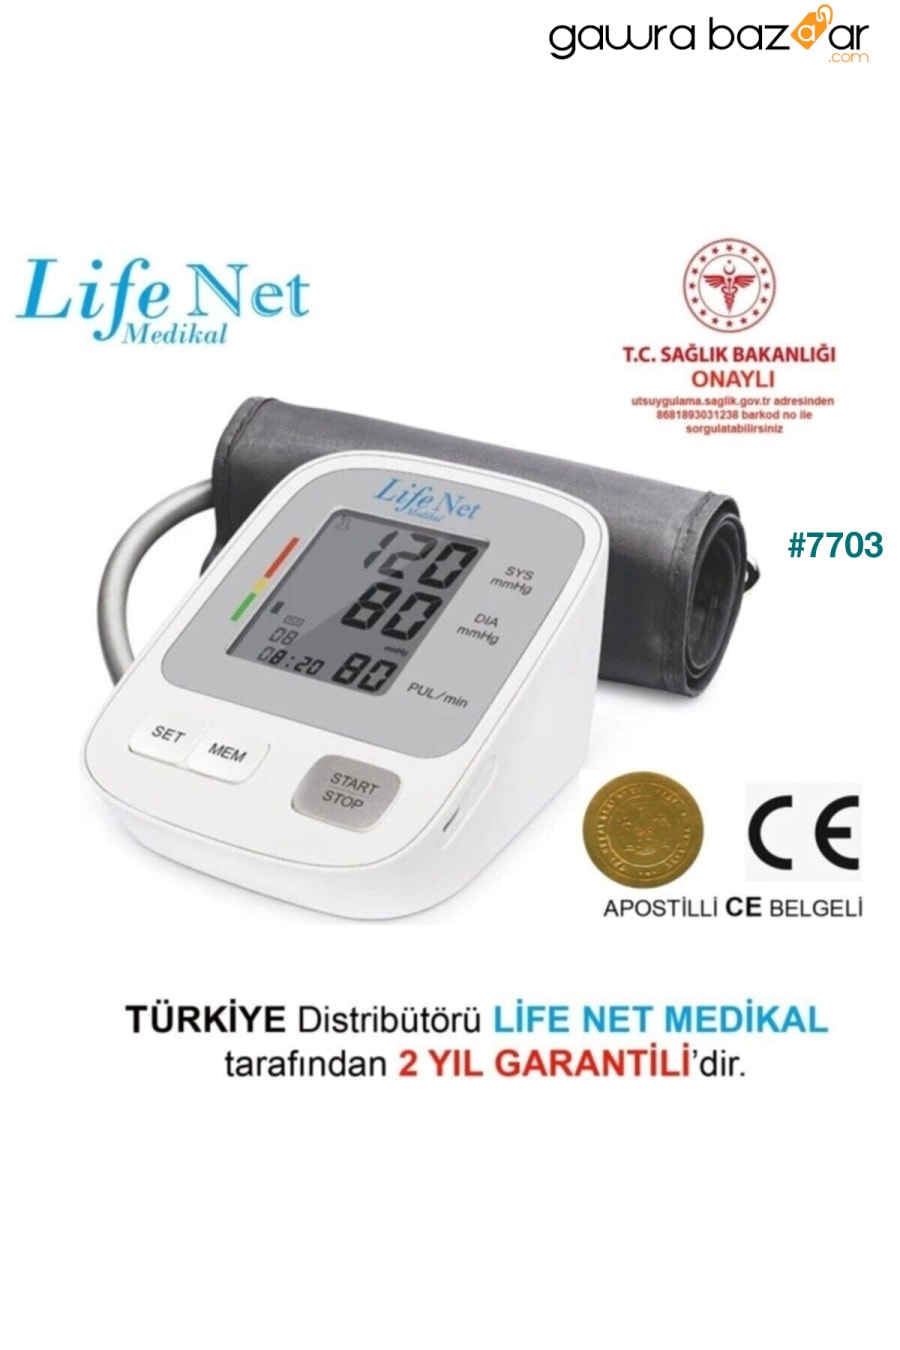 جهاز مراقبة ضغط الدم ، جهاز مراقبة ضغط الدم في أعلى الذراع ، جهاز مراقبة معدل ضربات القلب ، Wbp-108 مع مدخل USB. Life Net Medikal 1